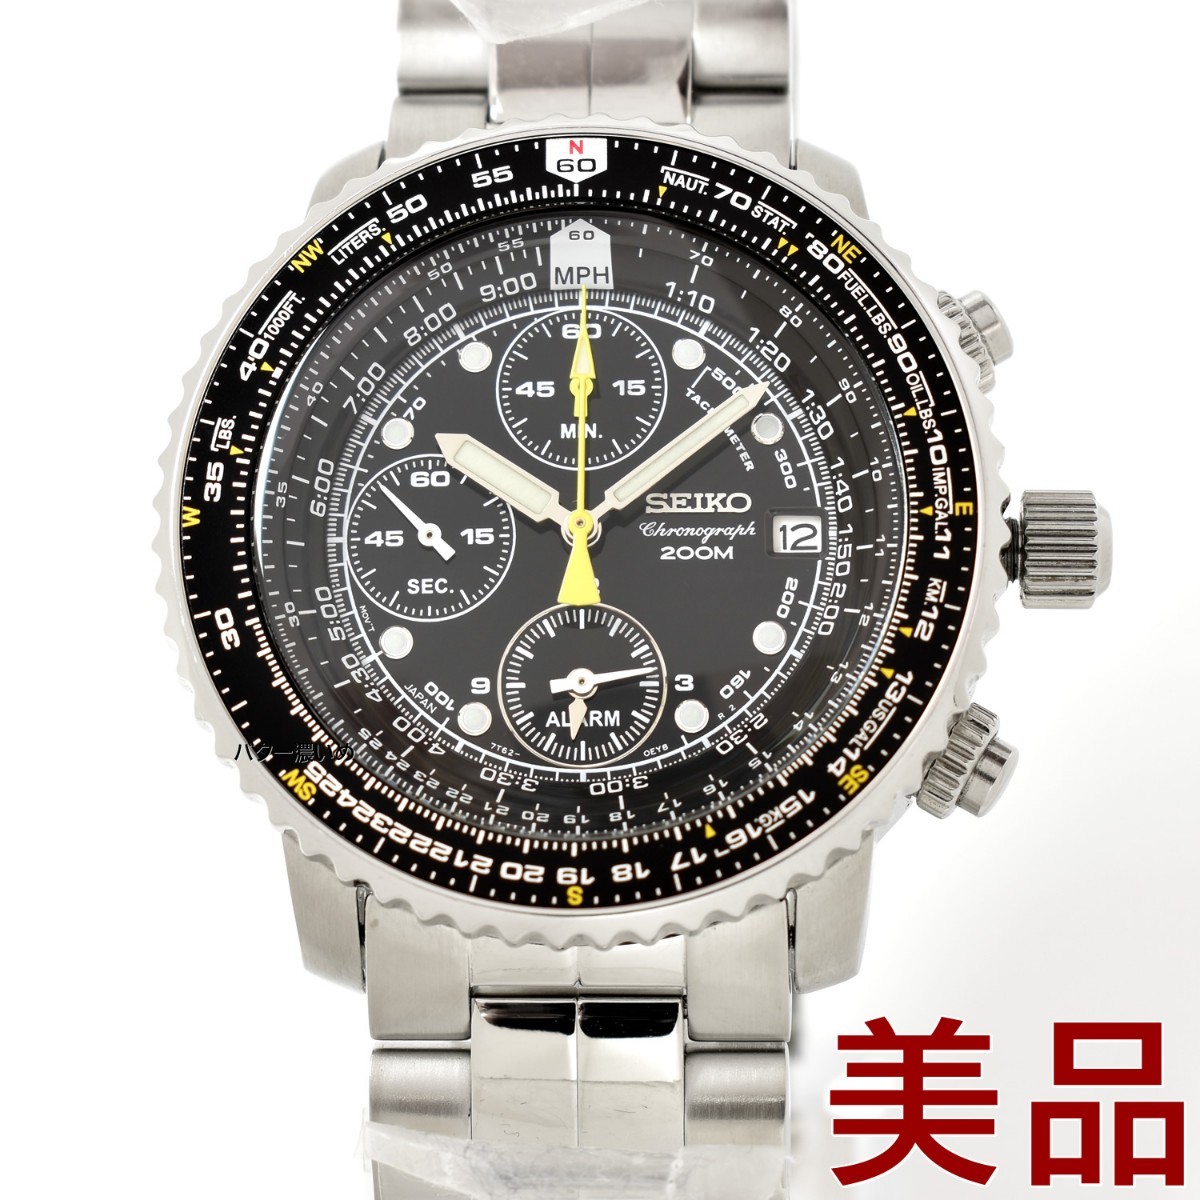 未使用 セイコー メンズ 腕時計 SEIKO 海外モデル パイロット アラーム クロノグラフ SNA411 クオーツ 逆輸入 中古品